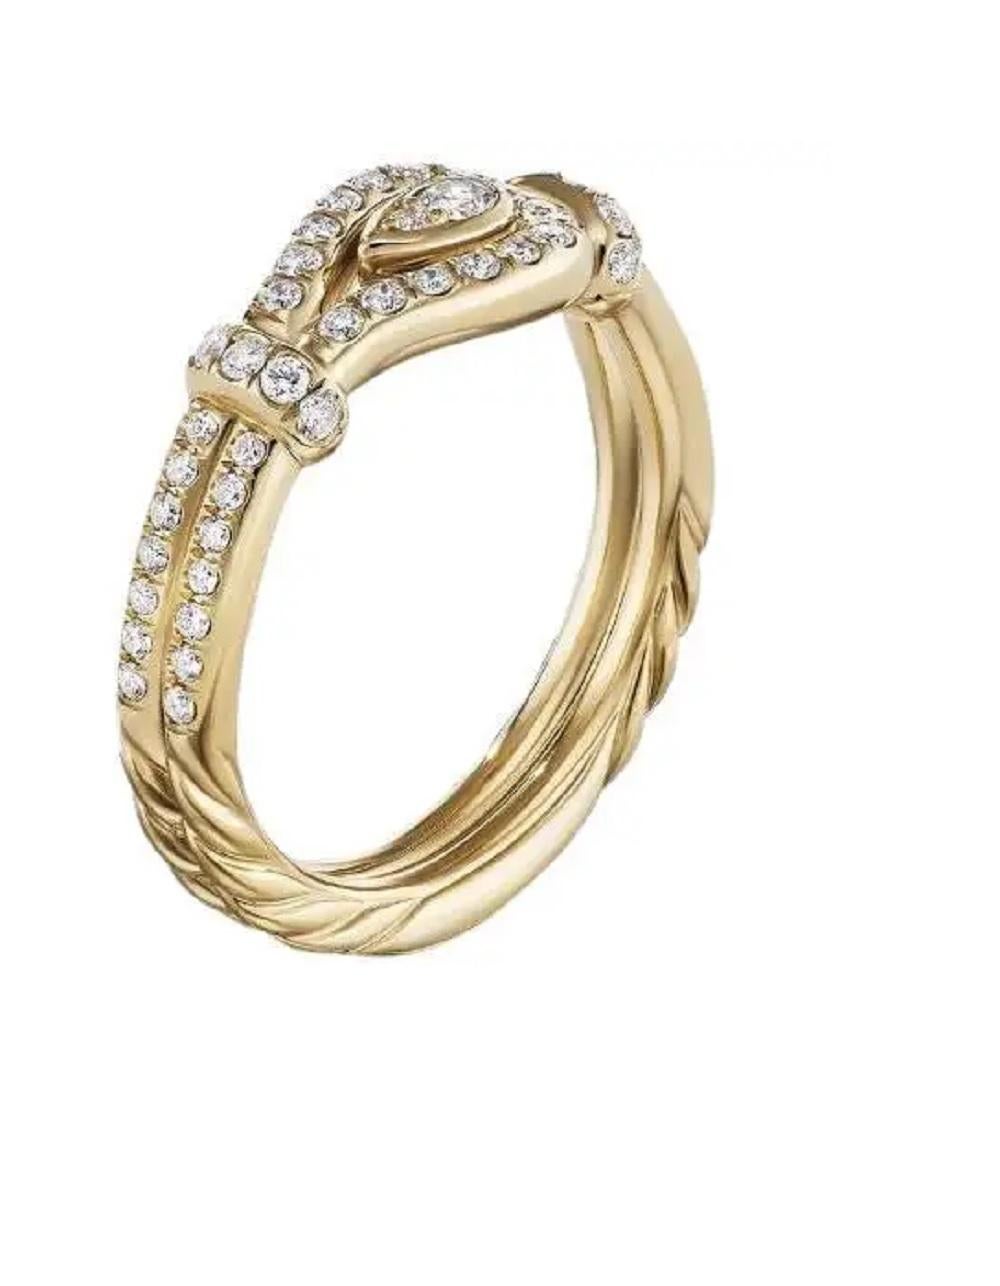 -18k Gelbgold
-Diamanten: 0,44 Karat Gesamtgewicht
-Ring, 4mm
-Ringgröße: 6,5
-Kommt mit David Yurman Ring  Box
-Einzelhandel: $3300